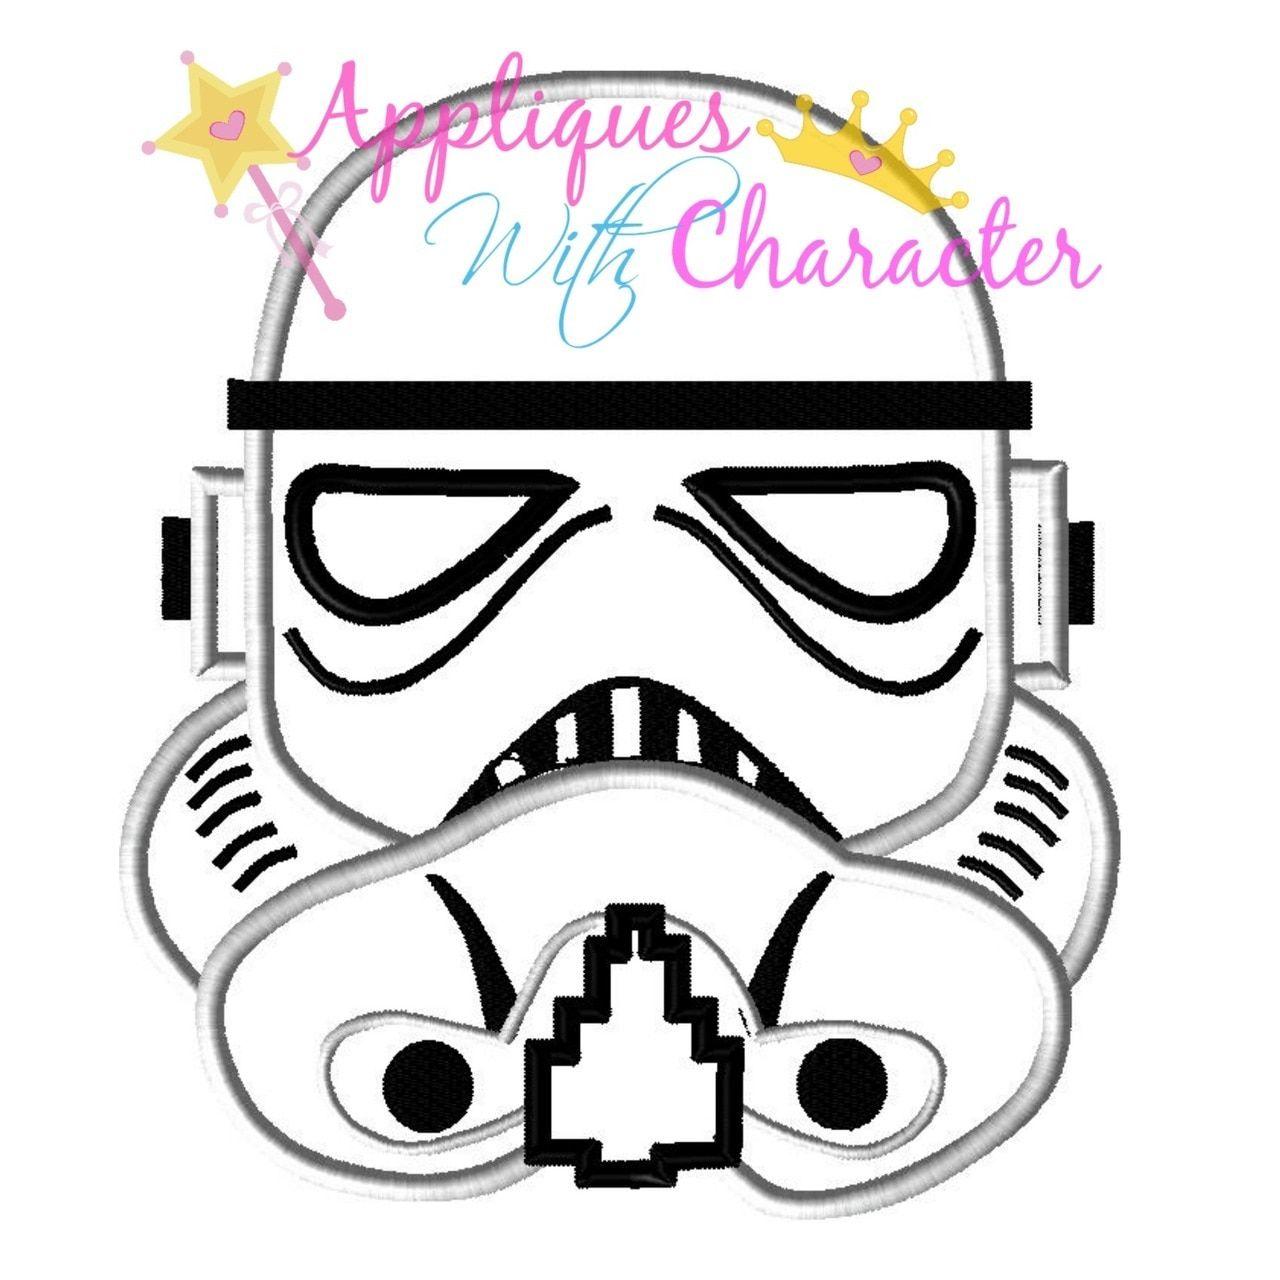 Stormtrooper Logo - Stormtrooper Helmet Applique Design